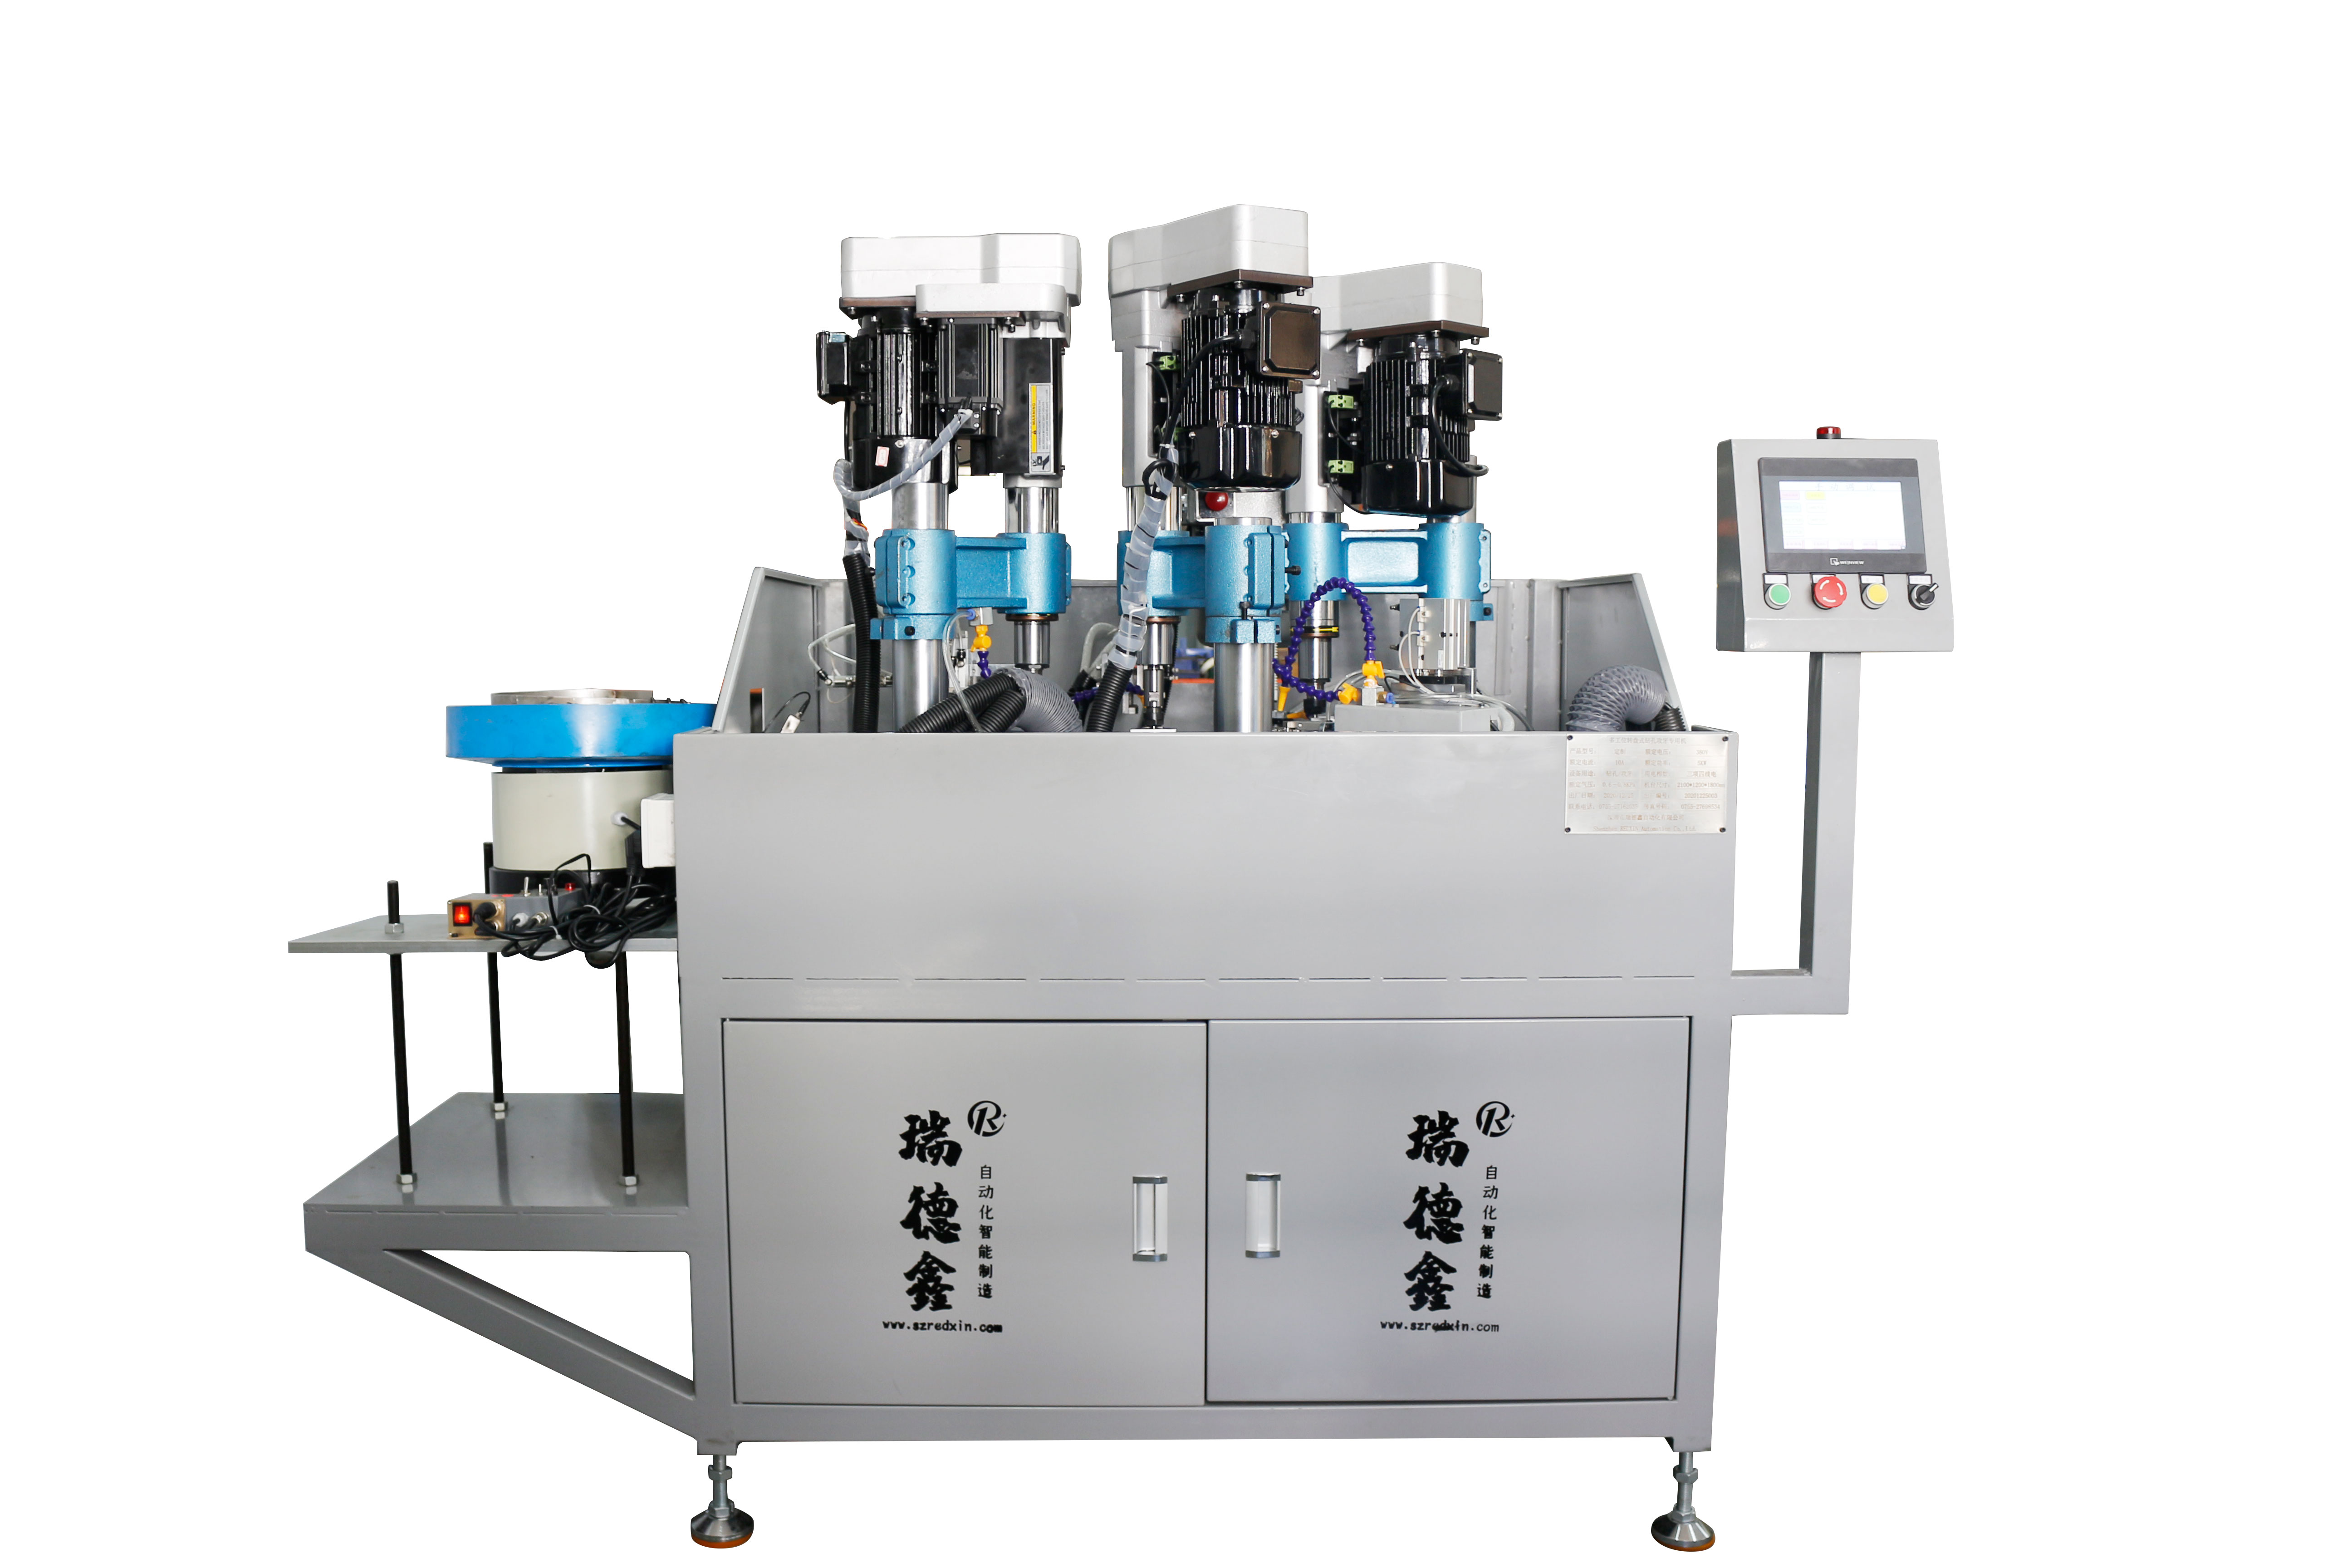 自动油压钻孔机”选“深圳市瑞德鑫”您值得信赖的专业品牌GD-191